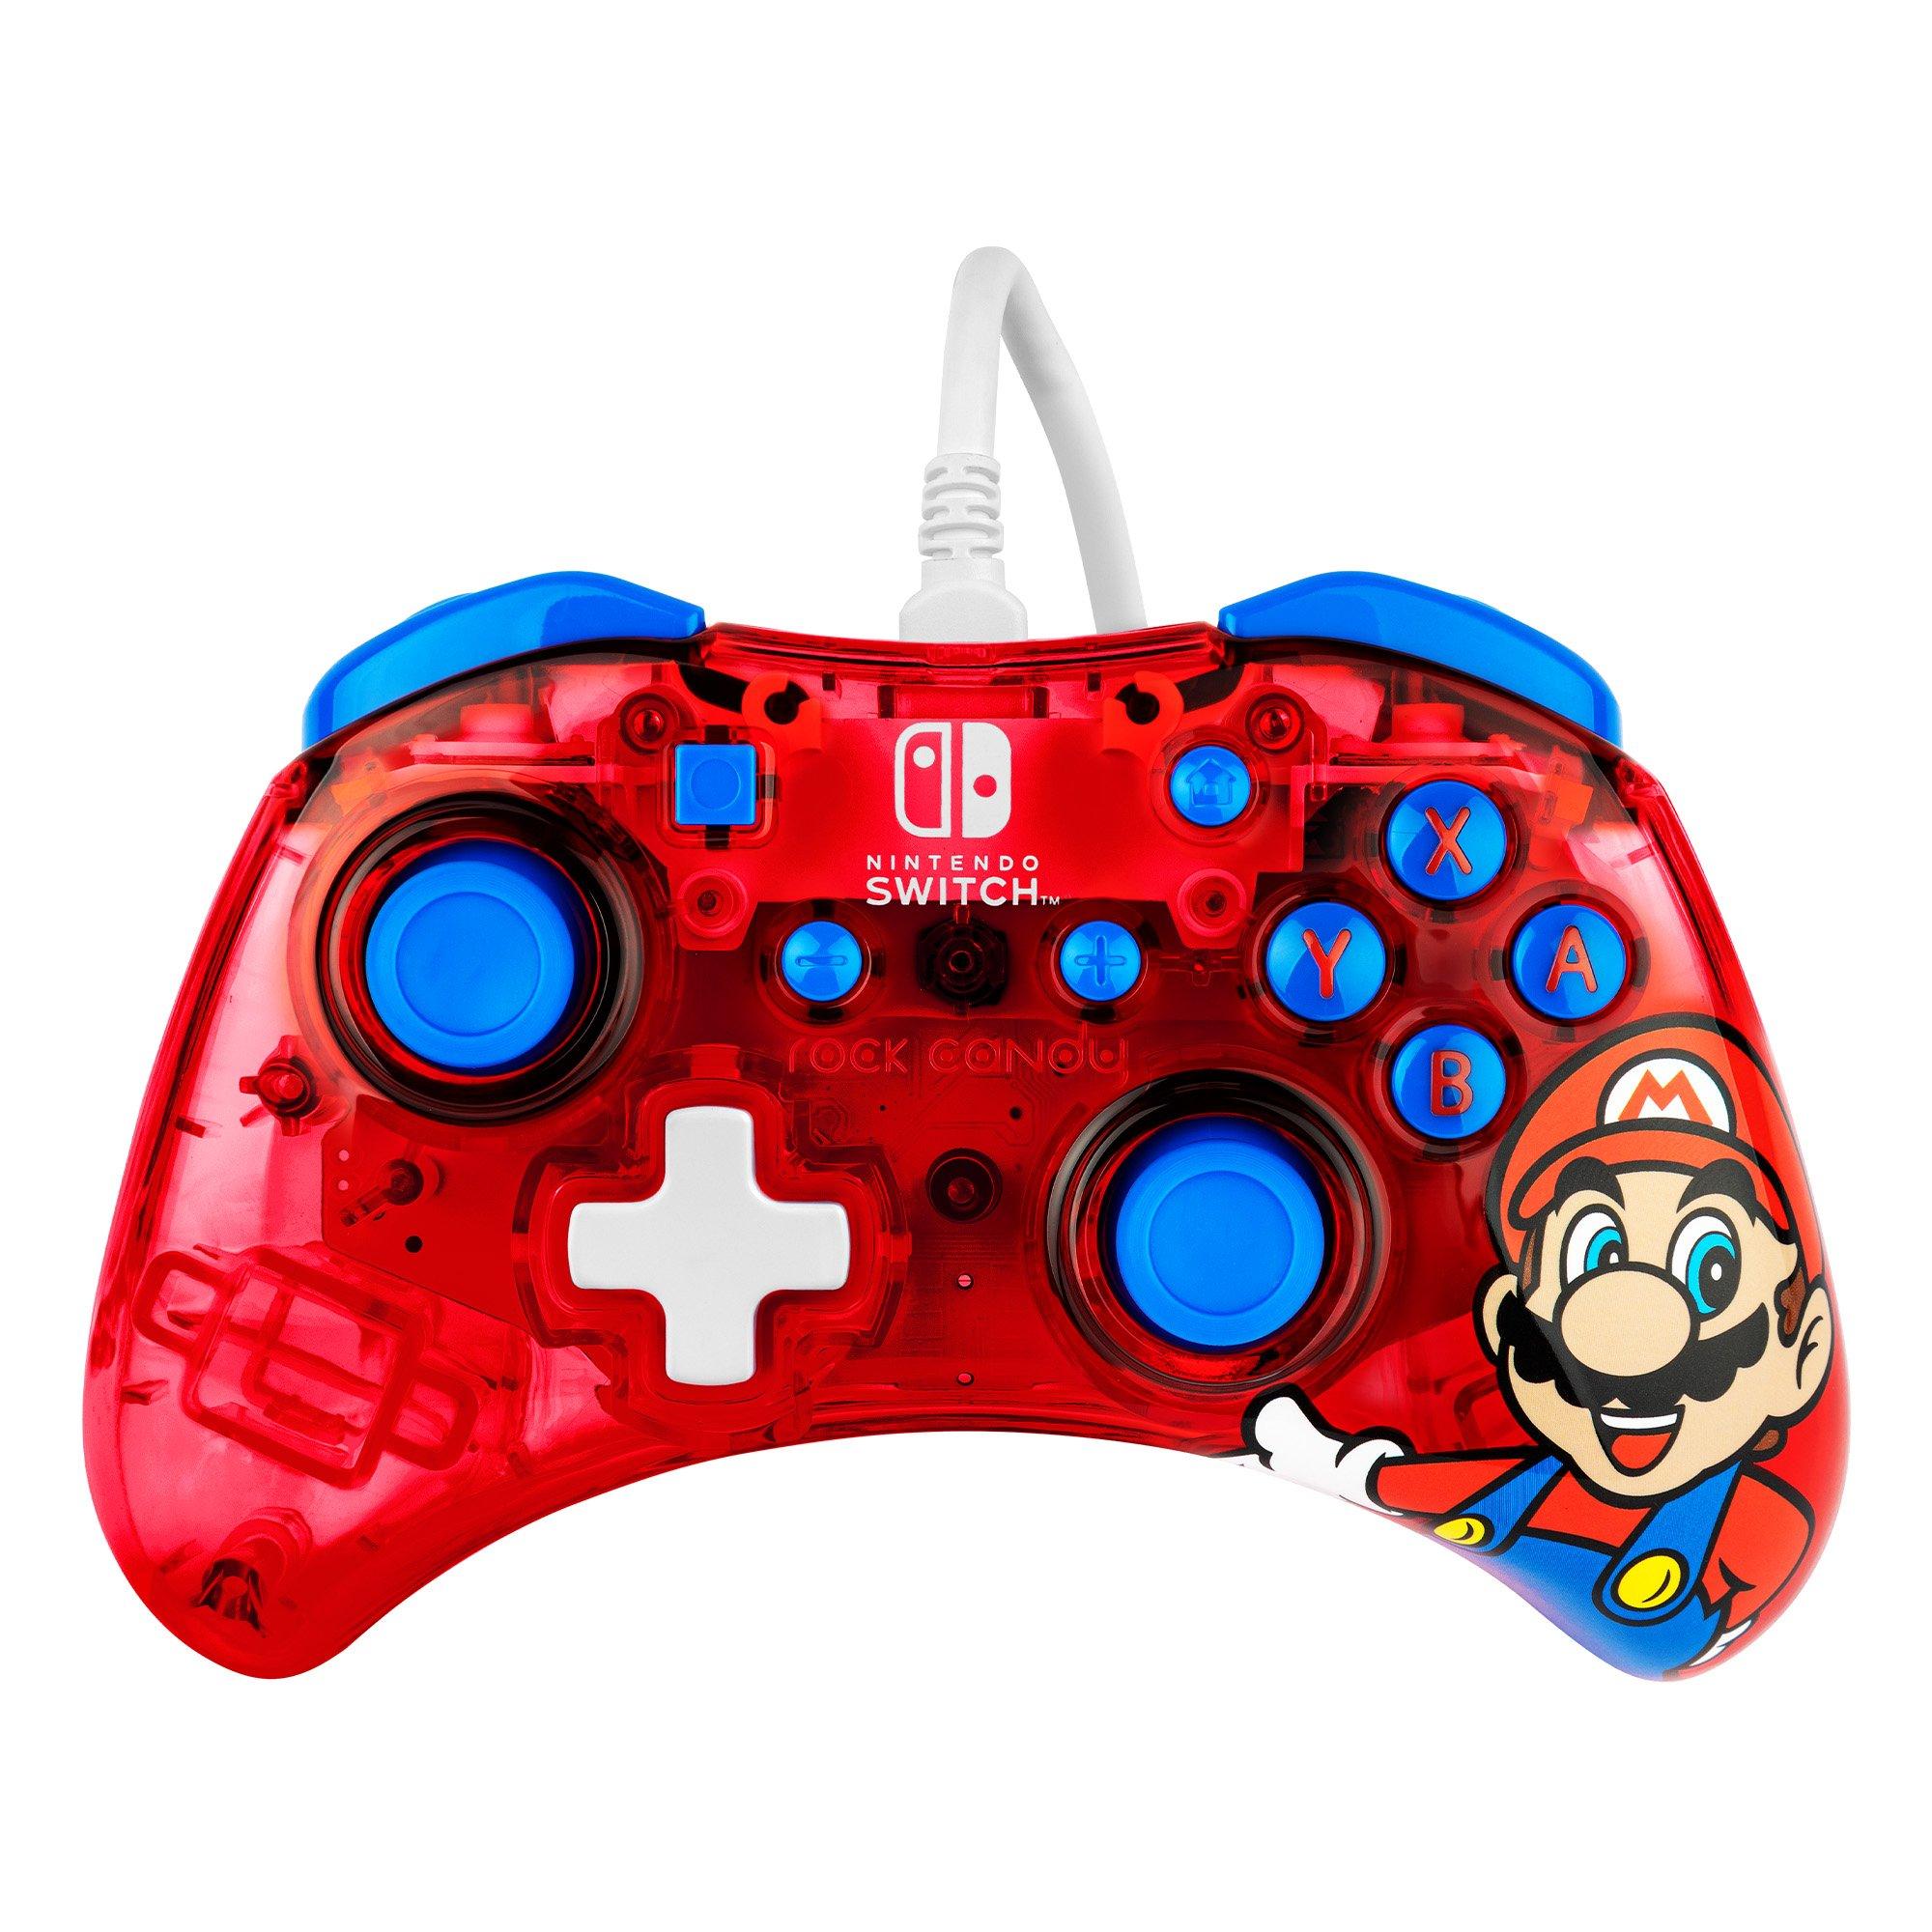 Edition: Super Mario